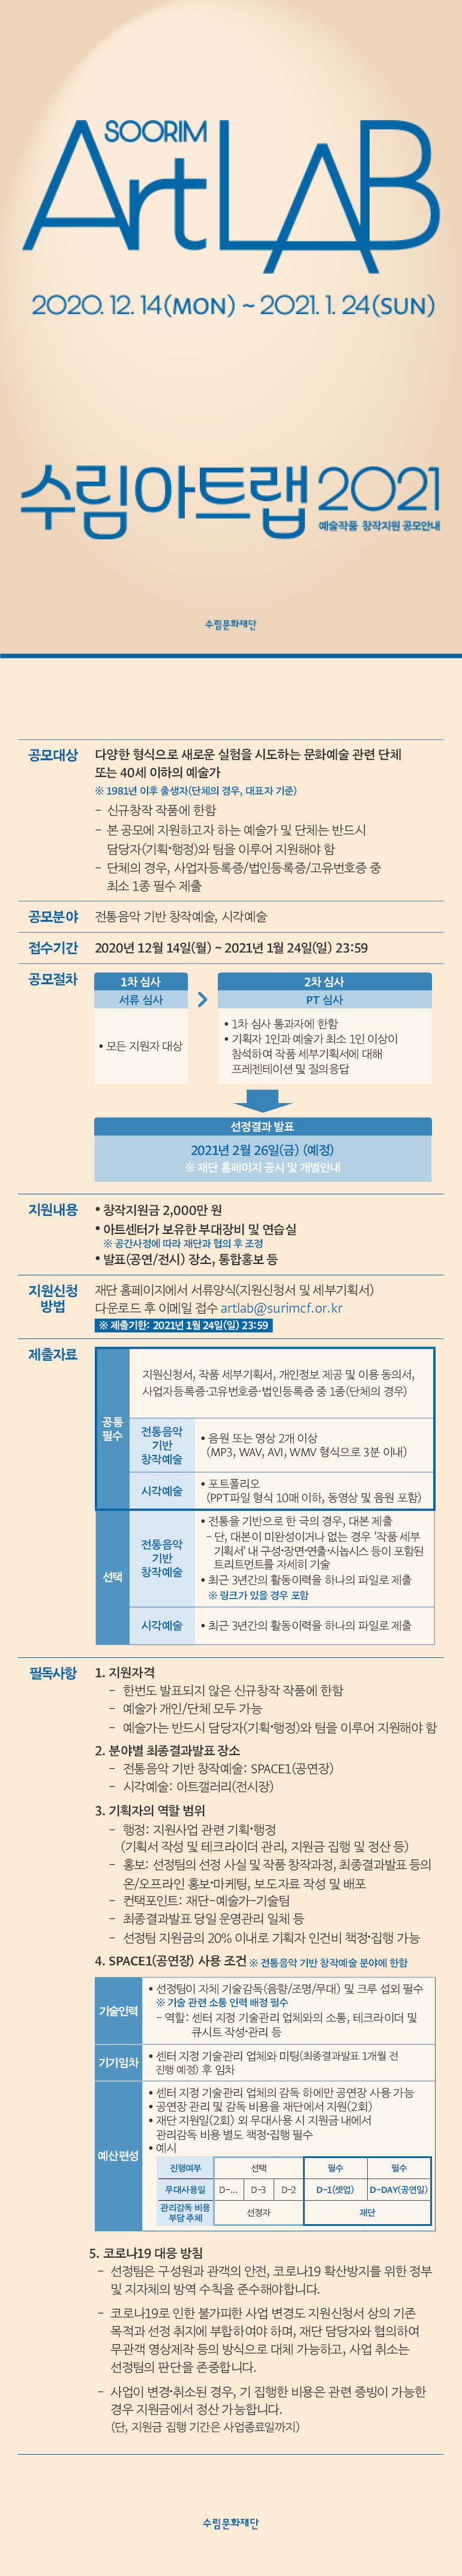 20201216_수림아트랩2021 공모 안내문.png